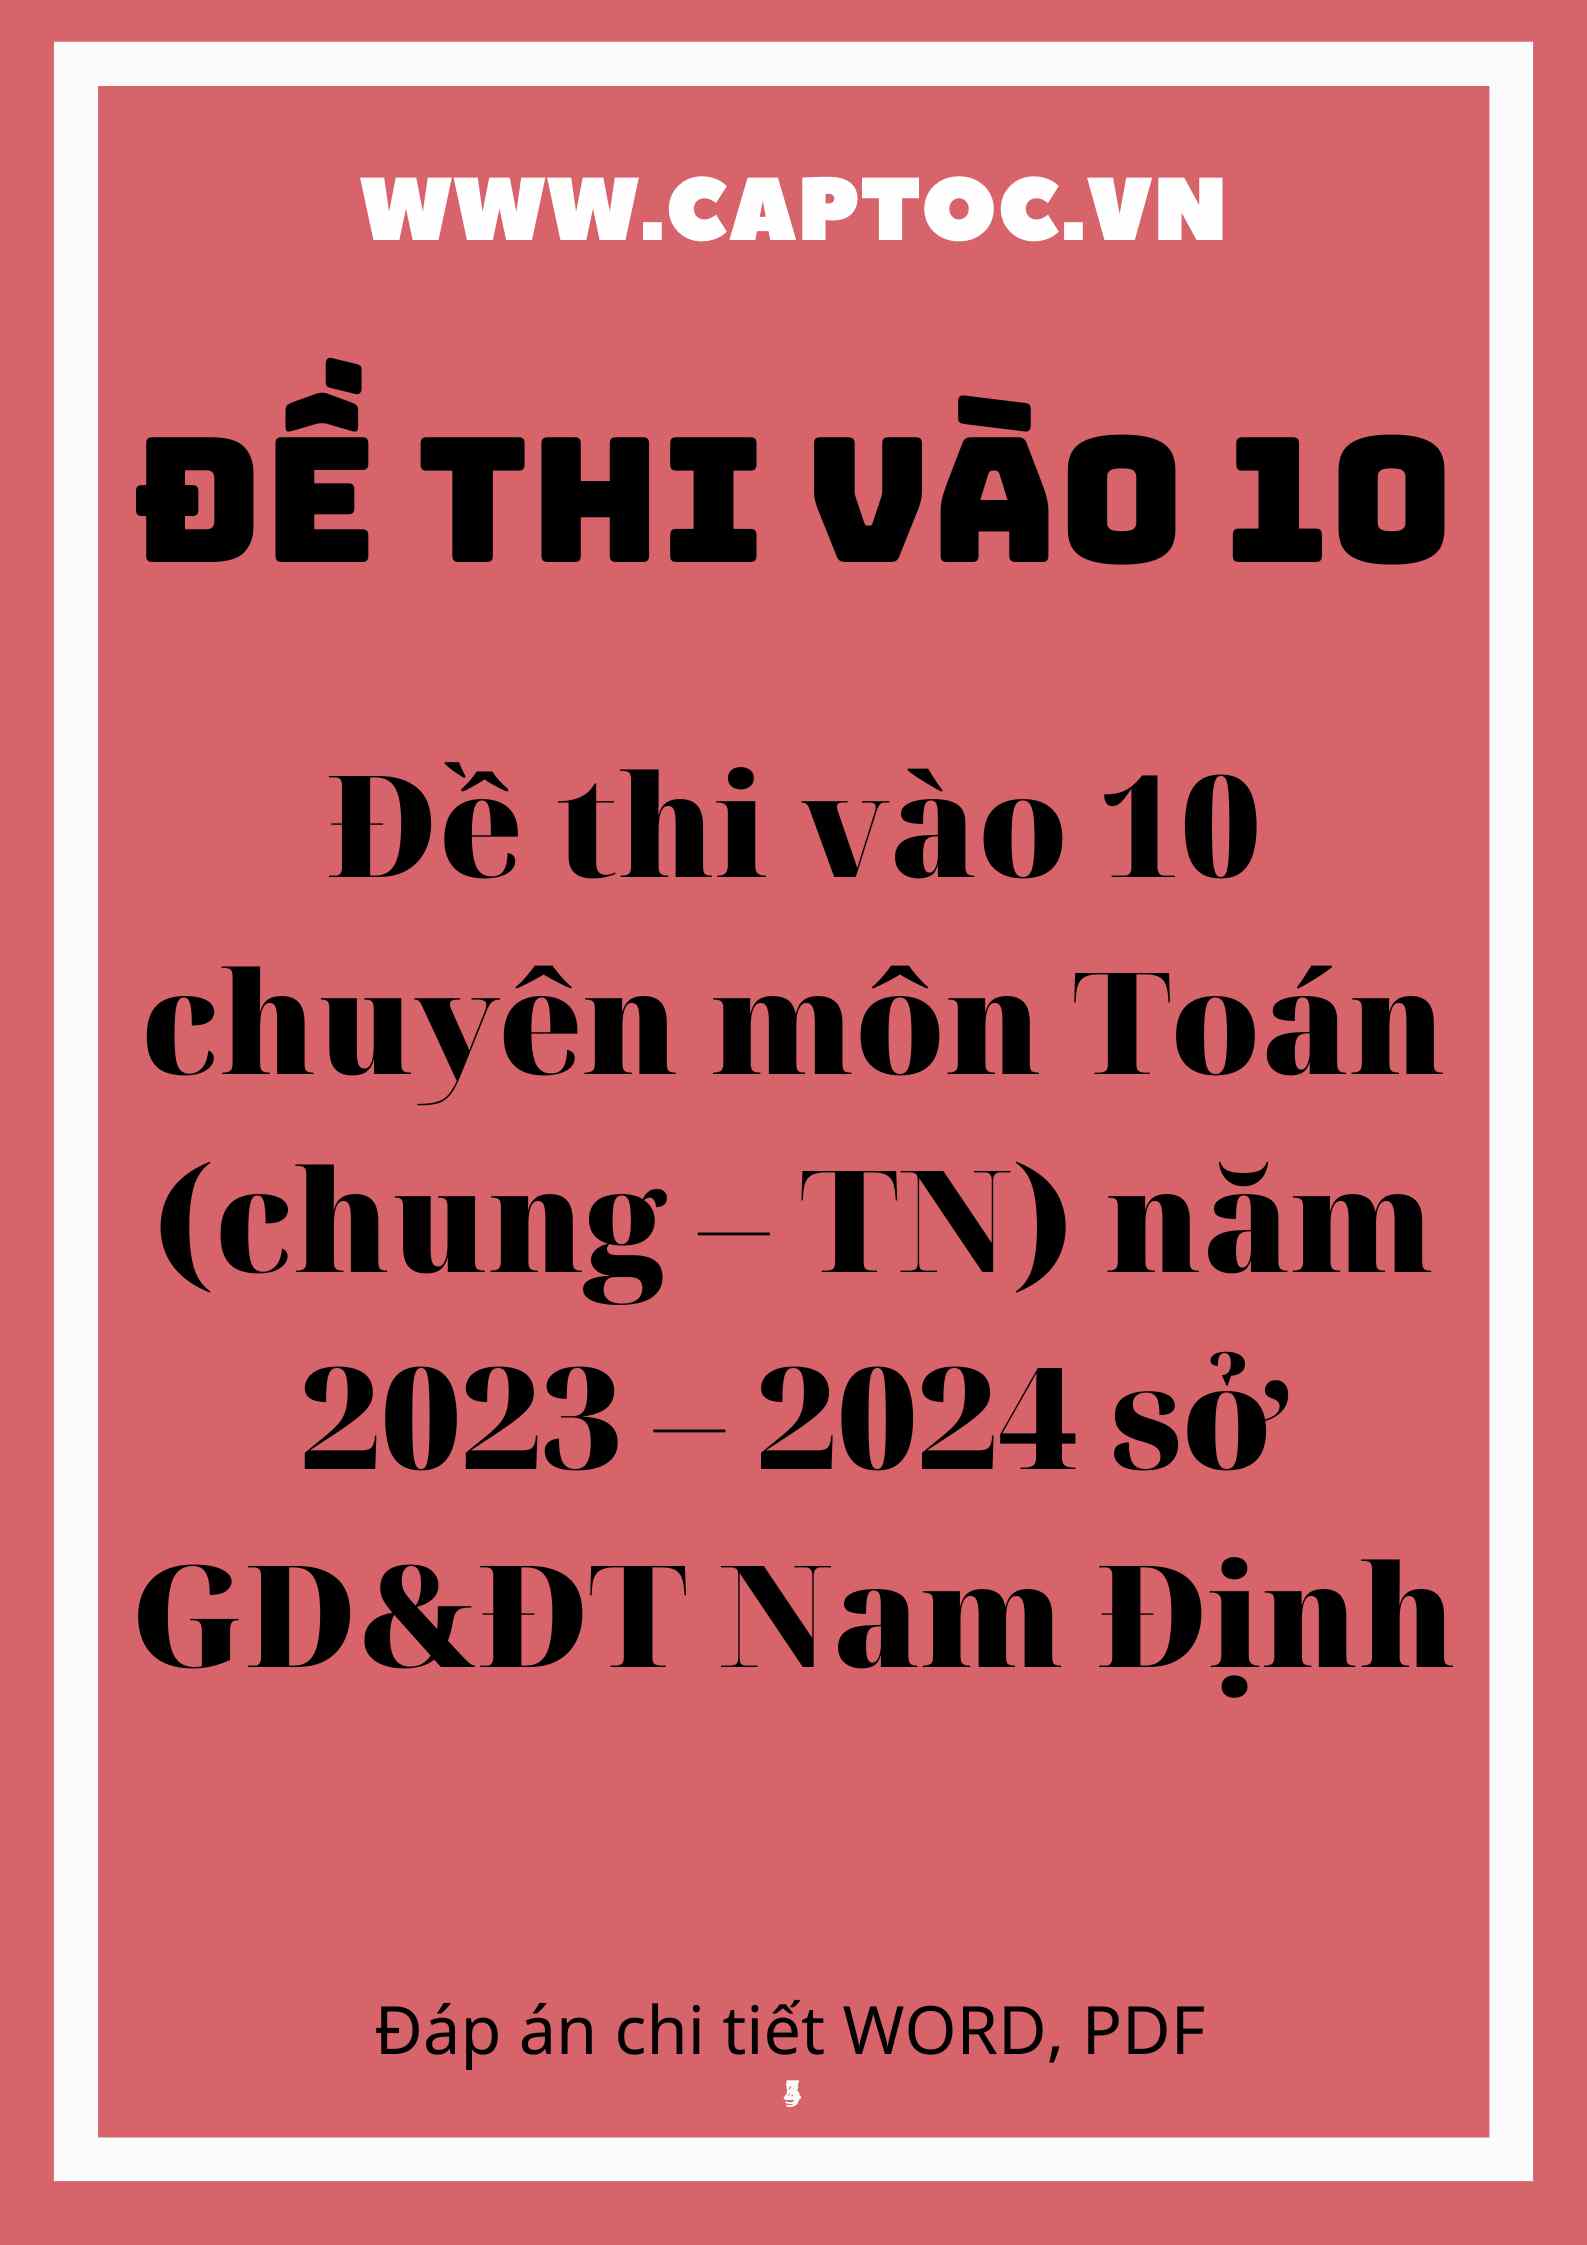 Đề thi vào 10 chuyên môn Toán (chung – TN) năm 2023 – 2024 sở GD&ĐT Nam Định